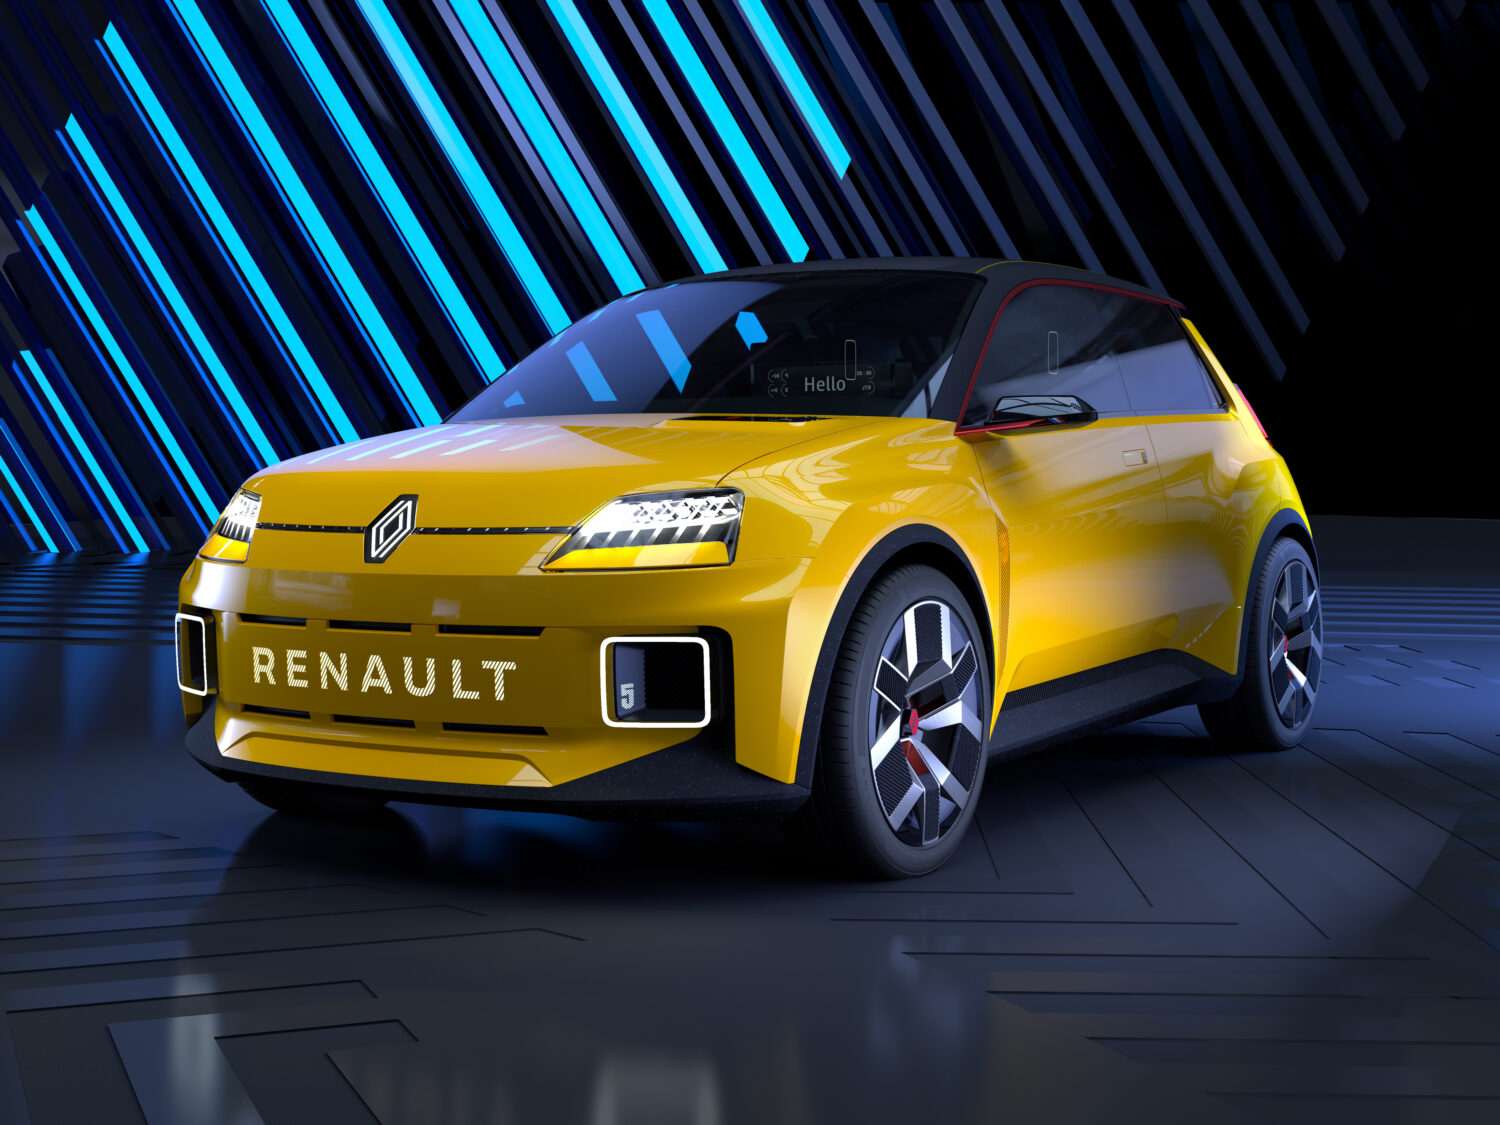 2021 - Renault 5 Prototype